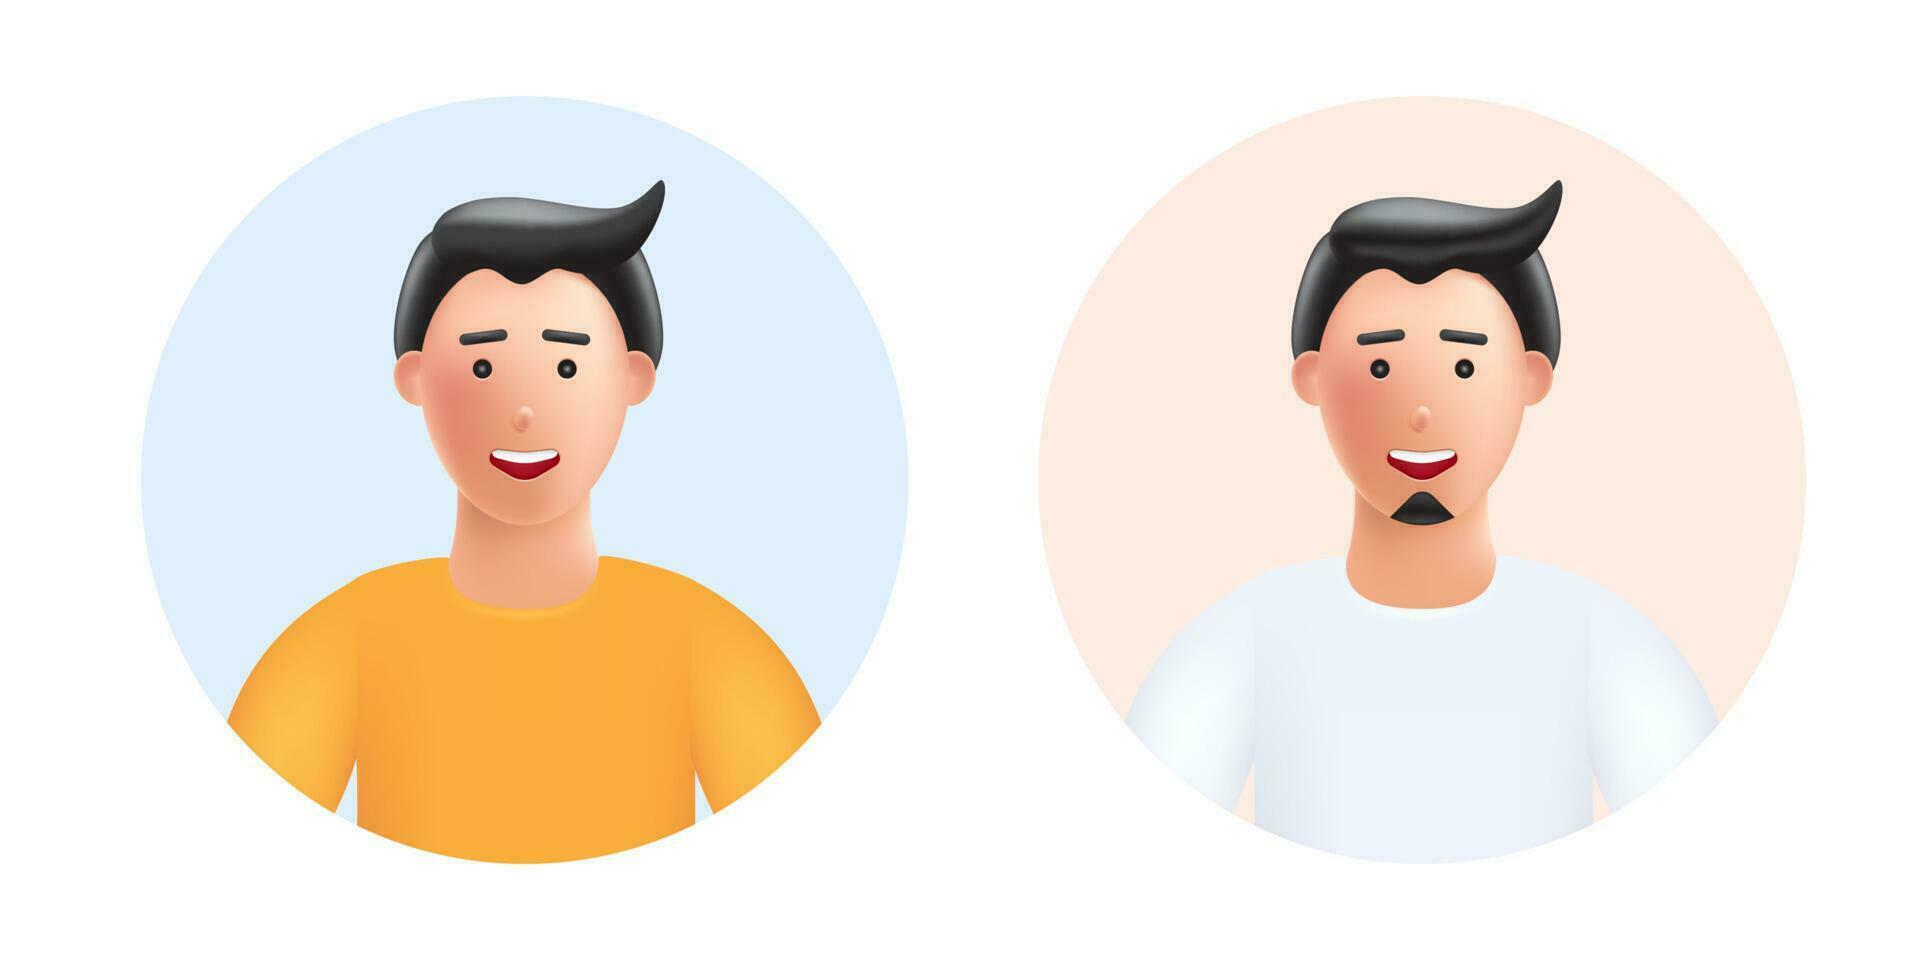 sorridente giovane uomo avatar con poco nero barba e no baffi, 3d vettore persone illustrazione. cartone animato minimalista stile.